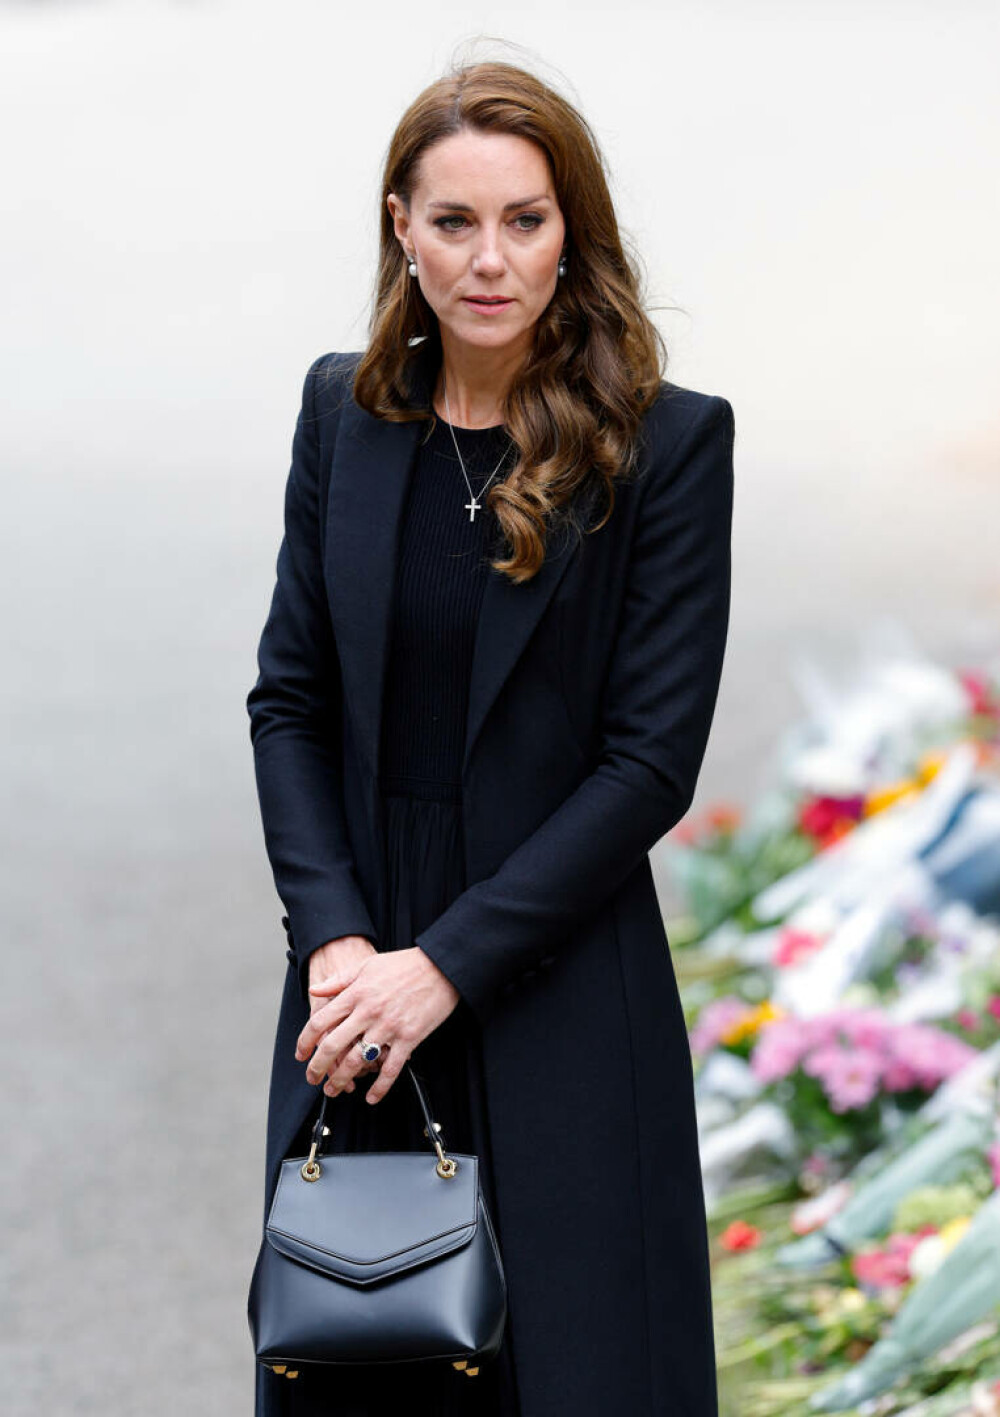 Ținuta lui Kate Middleton de la funeraliile reginei Elisabeta a II-a. Prințesa a purtat un colier special | GALERIE FOTO - Imaginea 6